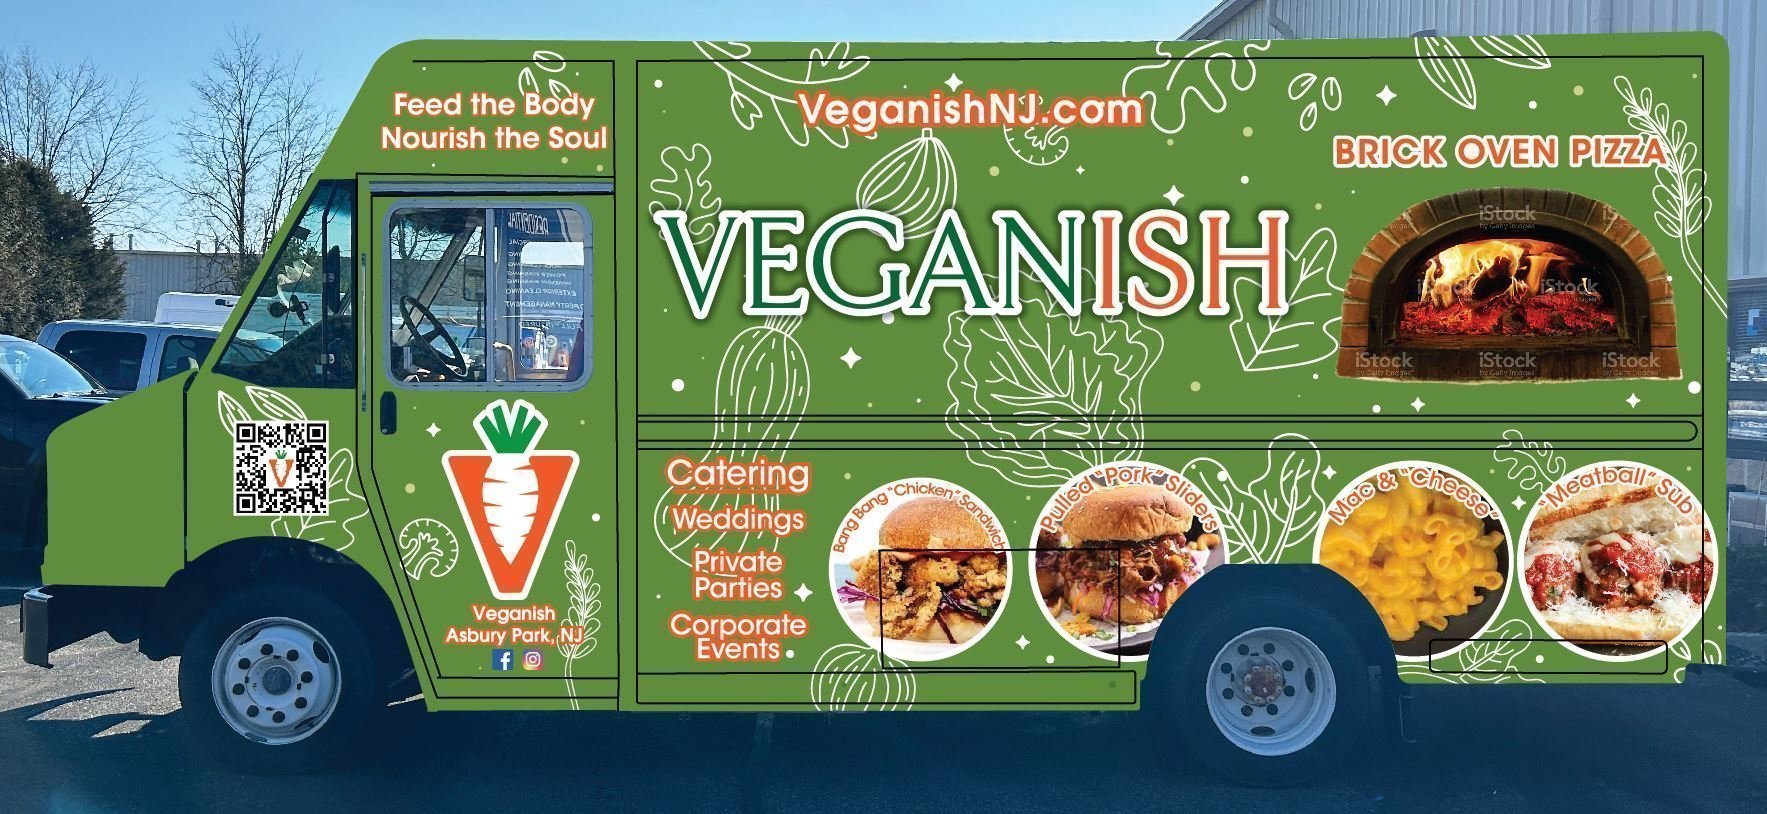 veganishnj.com